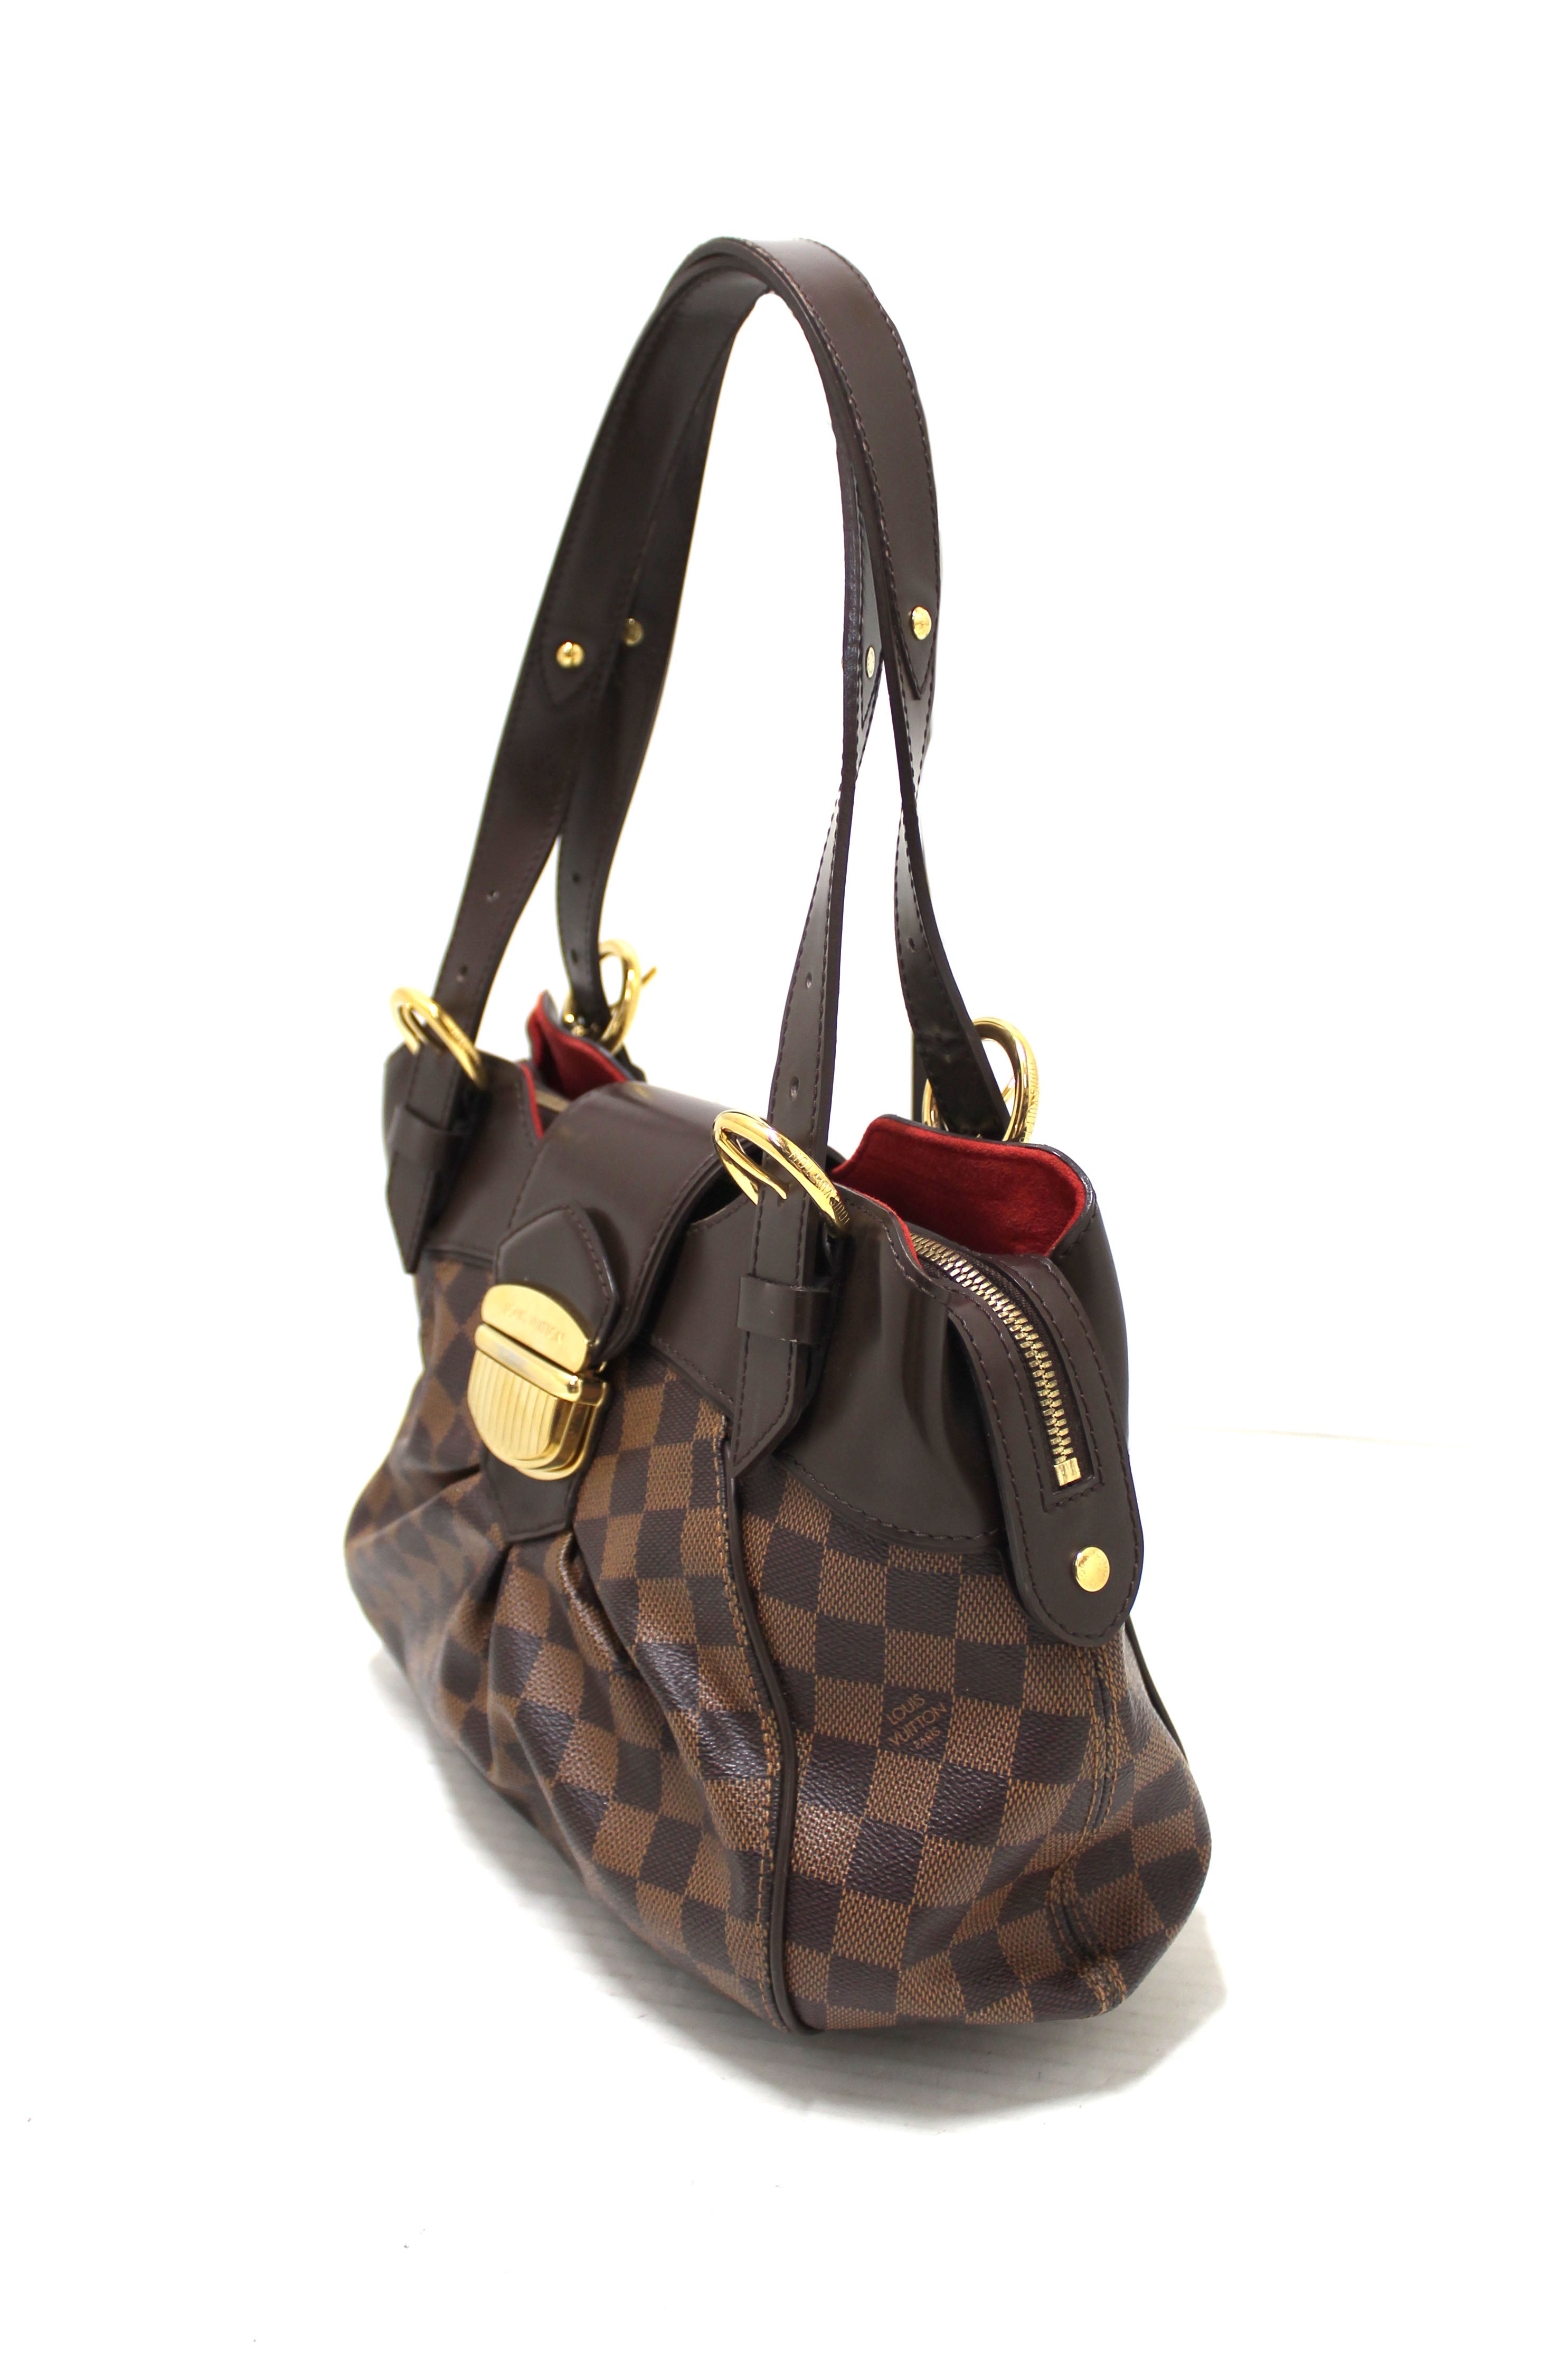 Authentic Louis Vuitton Damier Ebene Sistina MM Shoulder Bag